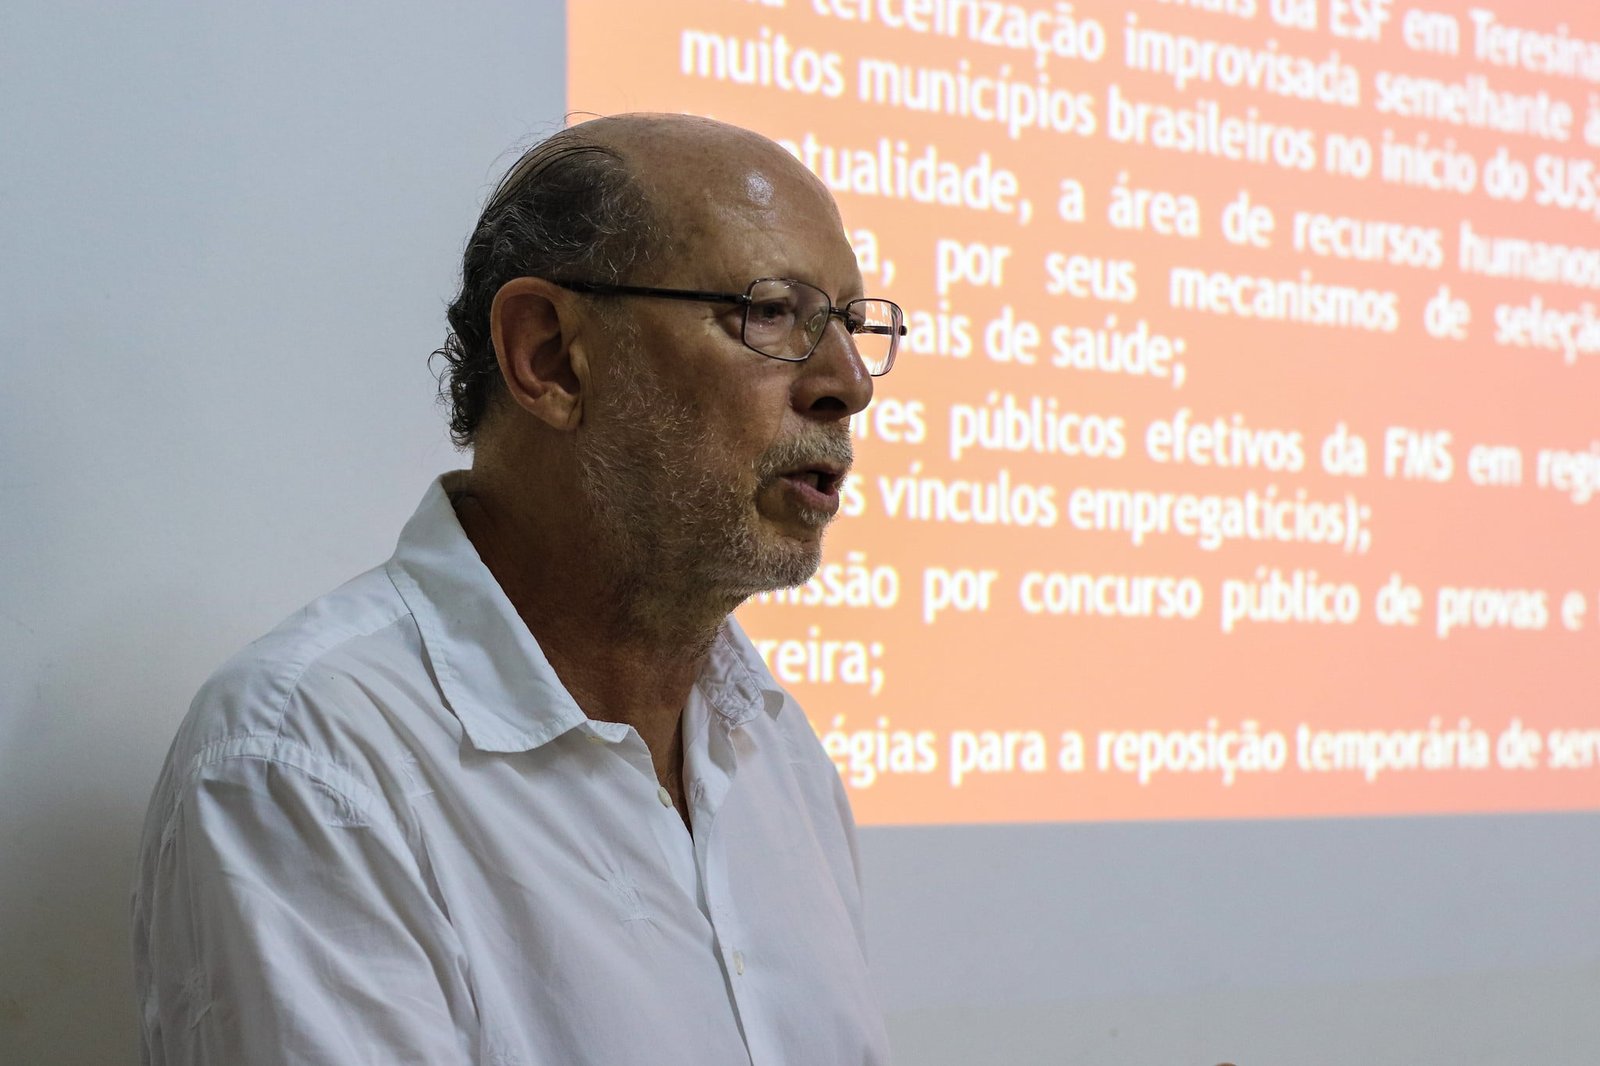 SciELO - Brasil - O trabalho em saúde bucal na Estratégia Saúde da Família:  uma difícil integração? O trabalho em saúde bucal na Estratégia Saúde da  Família: uma difícil integração?